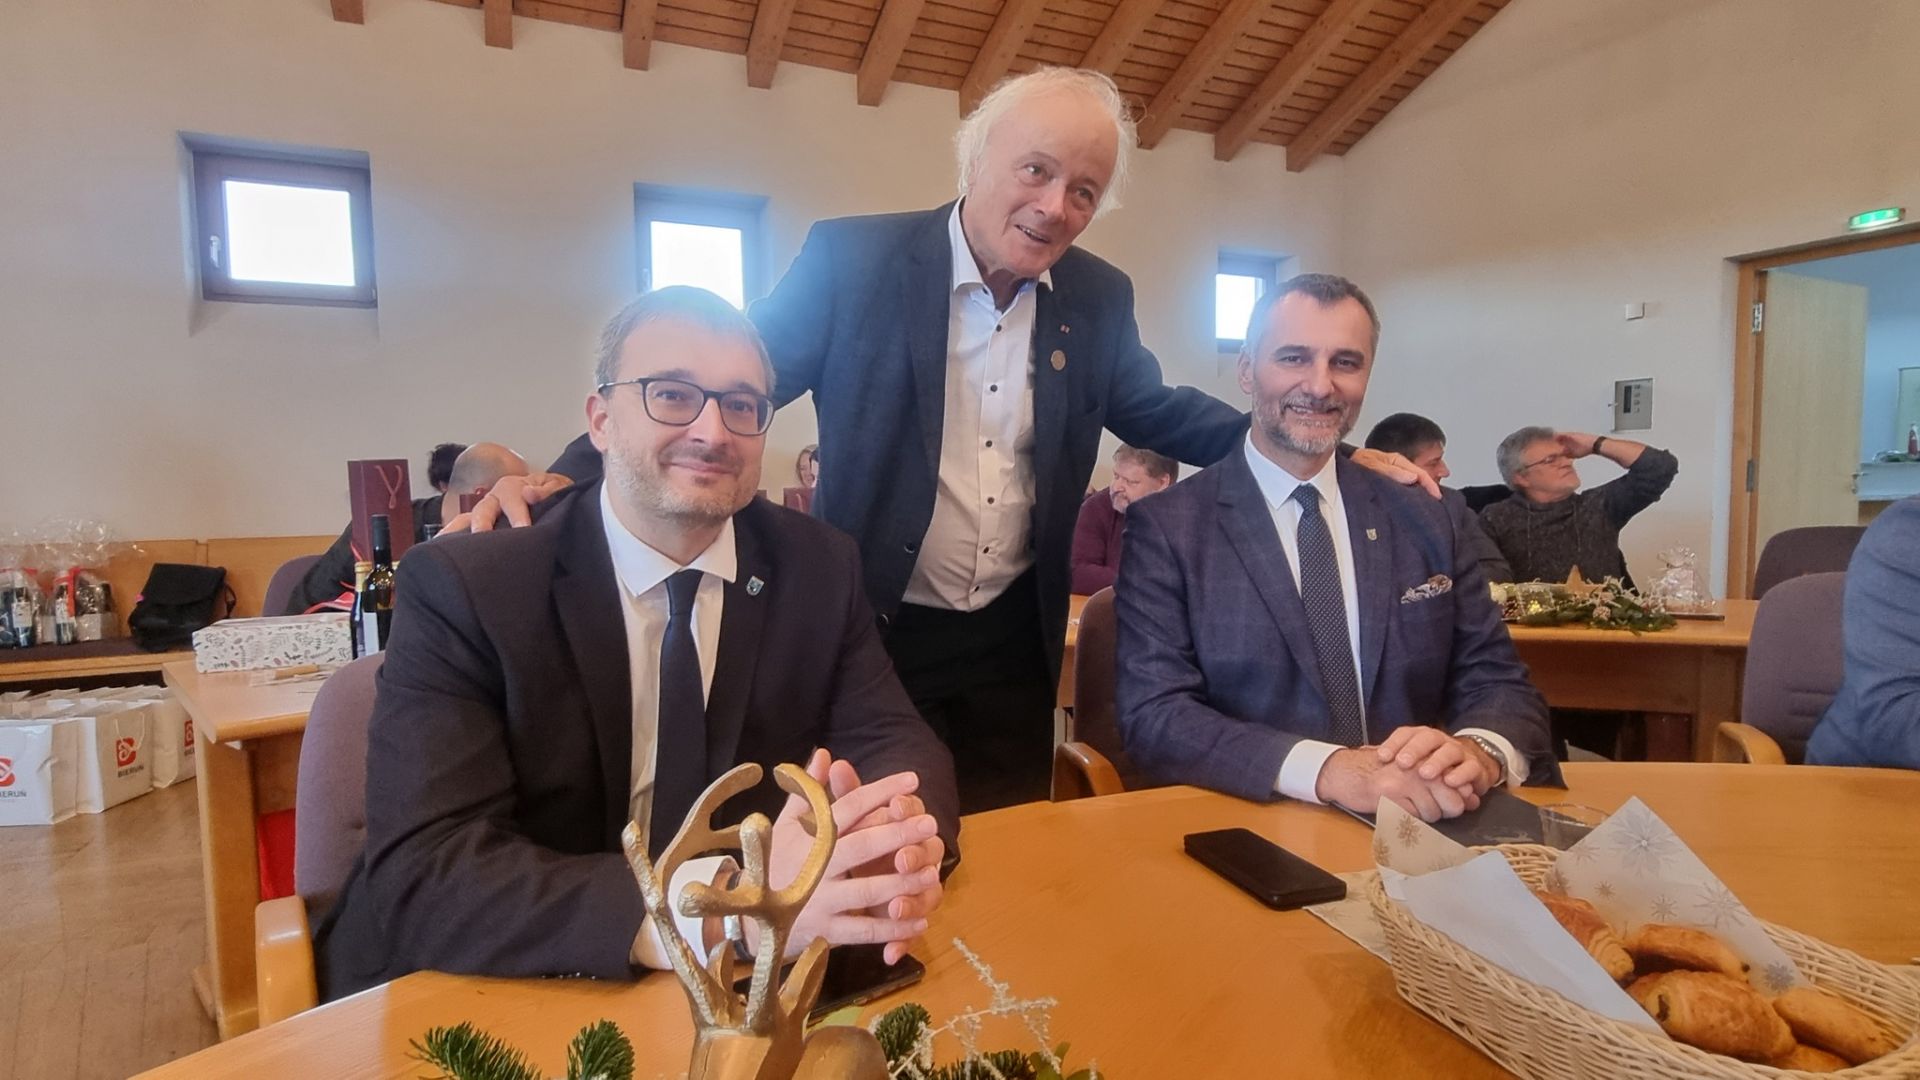 Od prawej: burmistrz Bierunia Krystian Grzesica, Bruno Zimmermann oraz starosta Moravský'ego Berouna Jan Hicz 